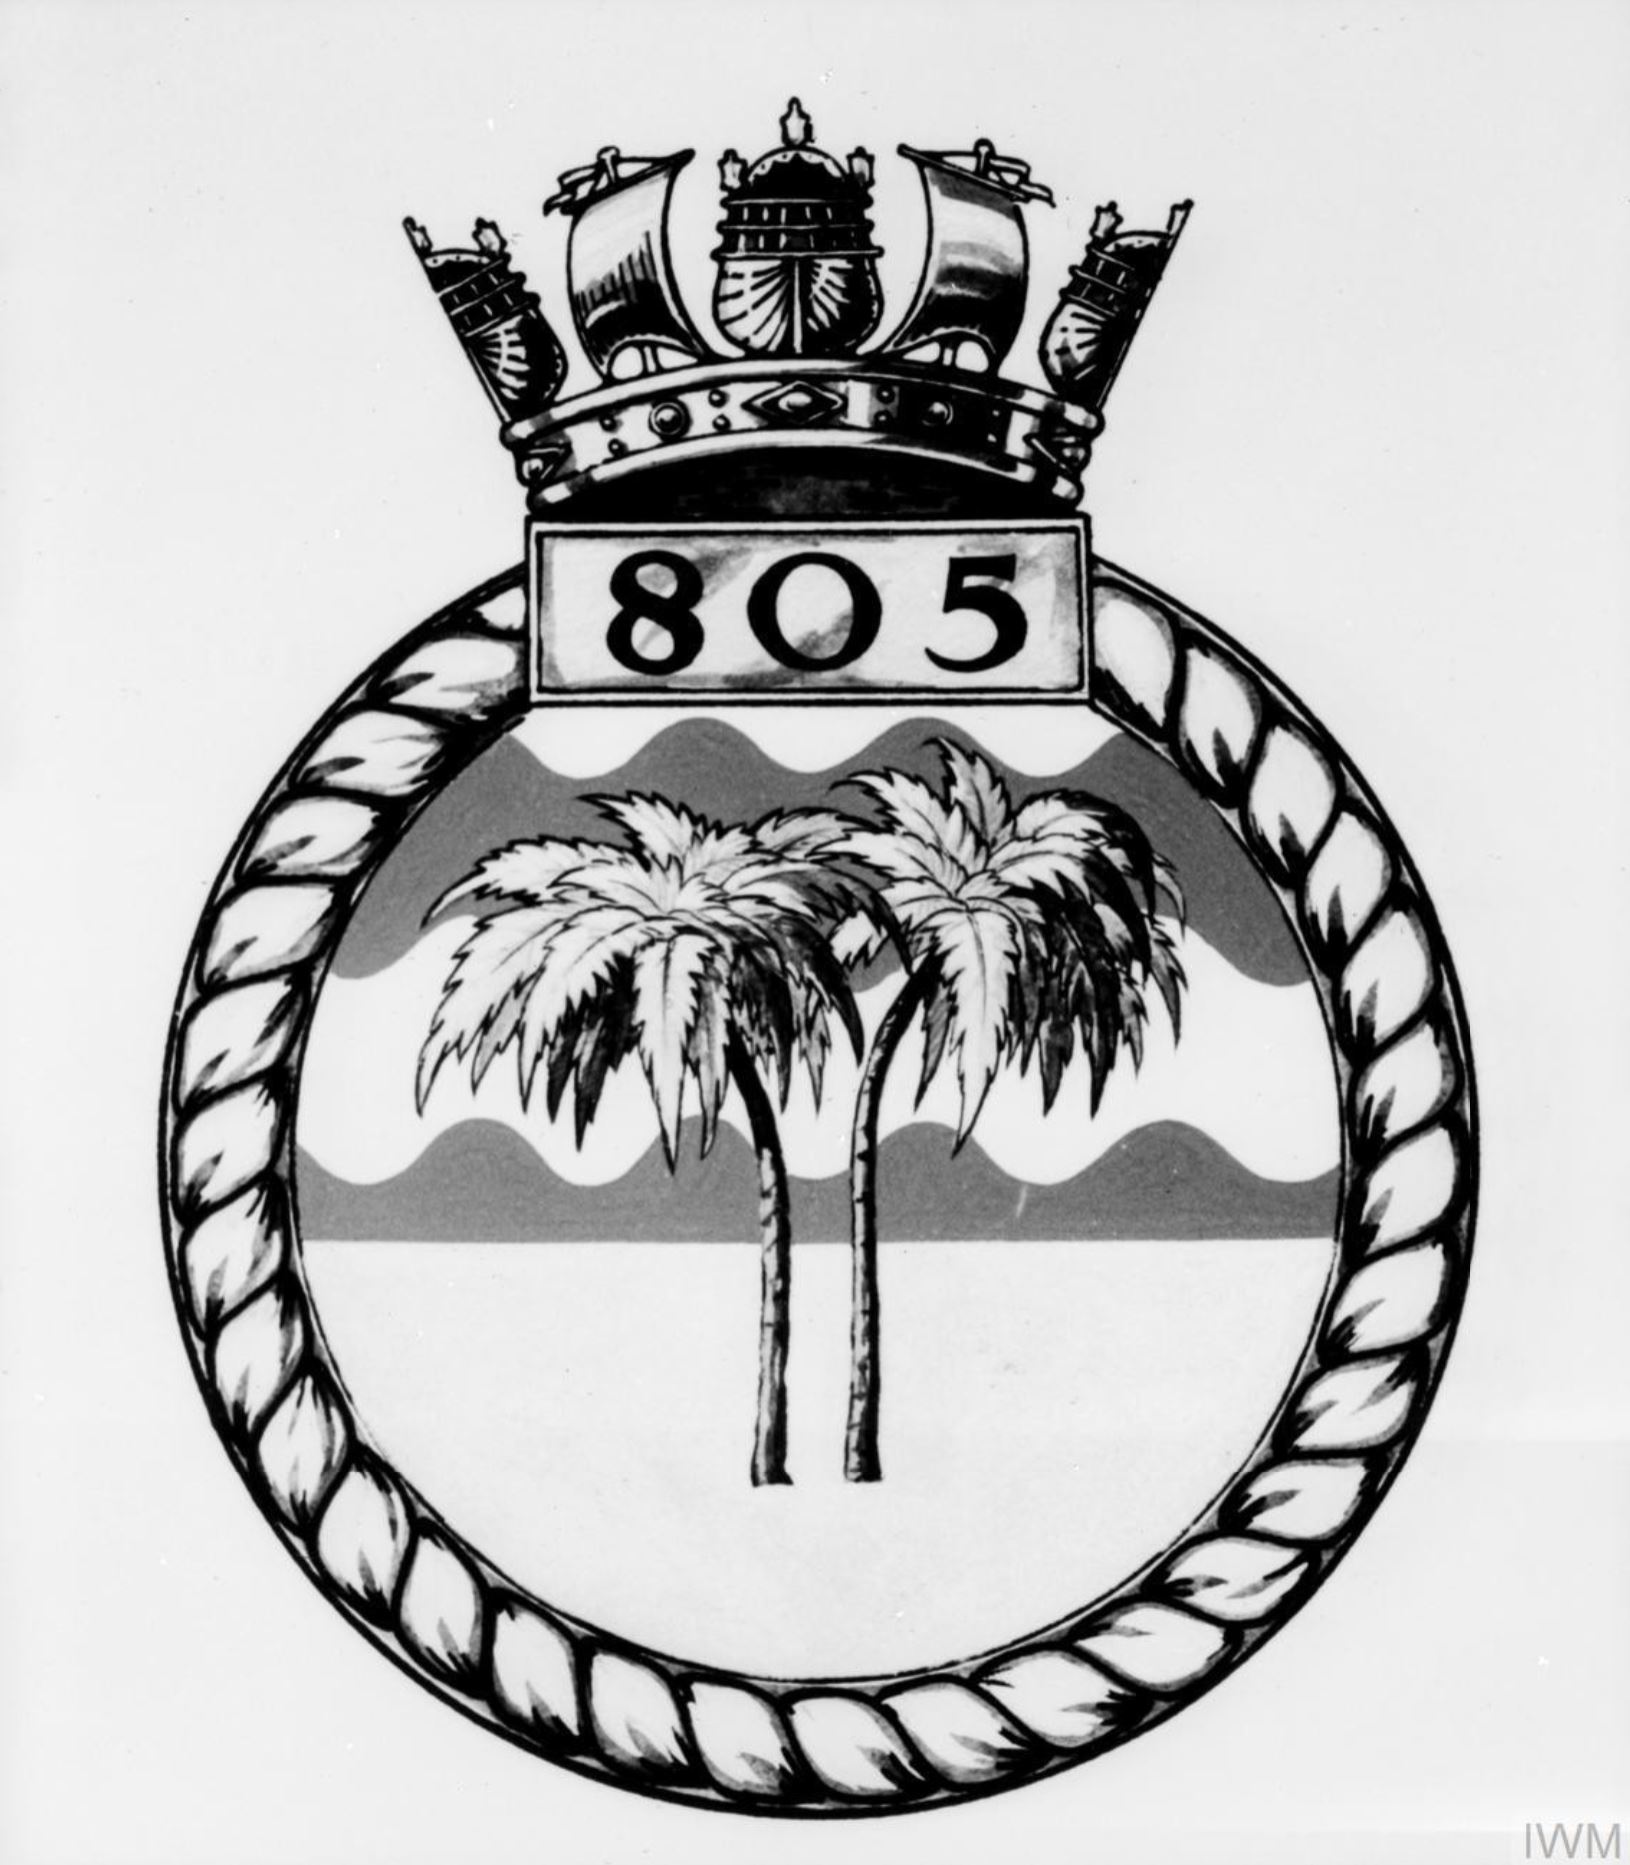 Fleet Air Arm crest of 805 Squadron IWM A26776